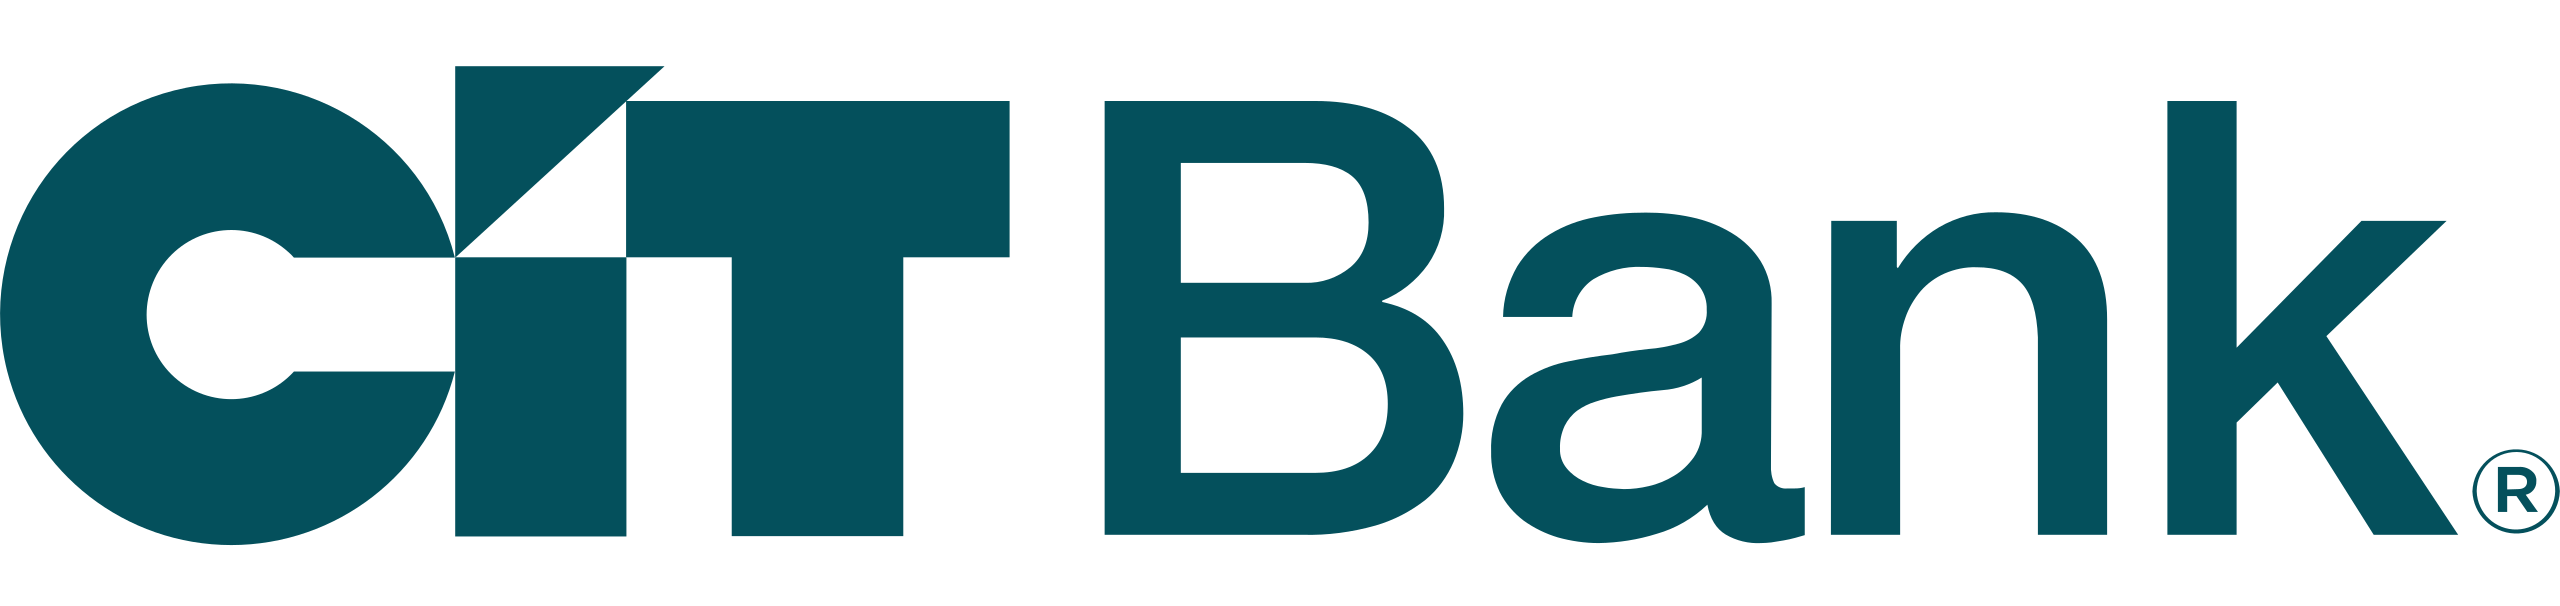 CIT bank logo